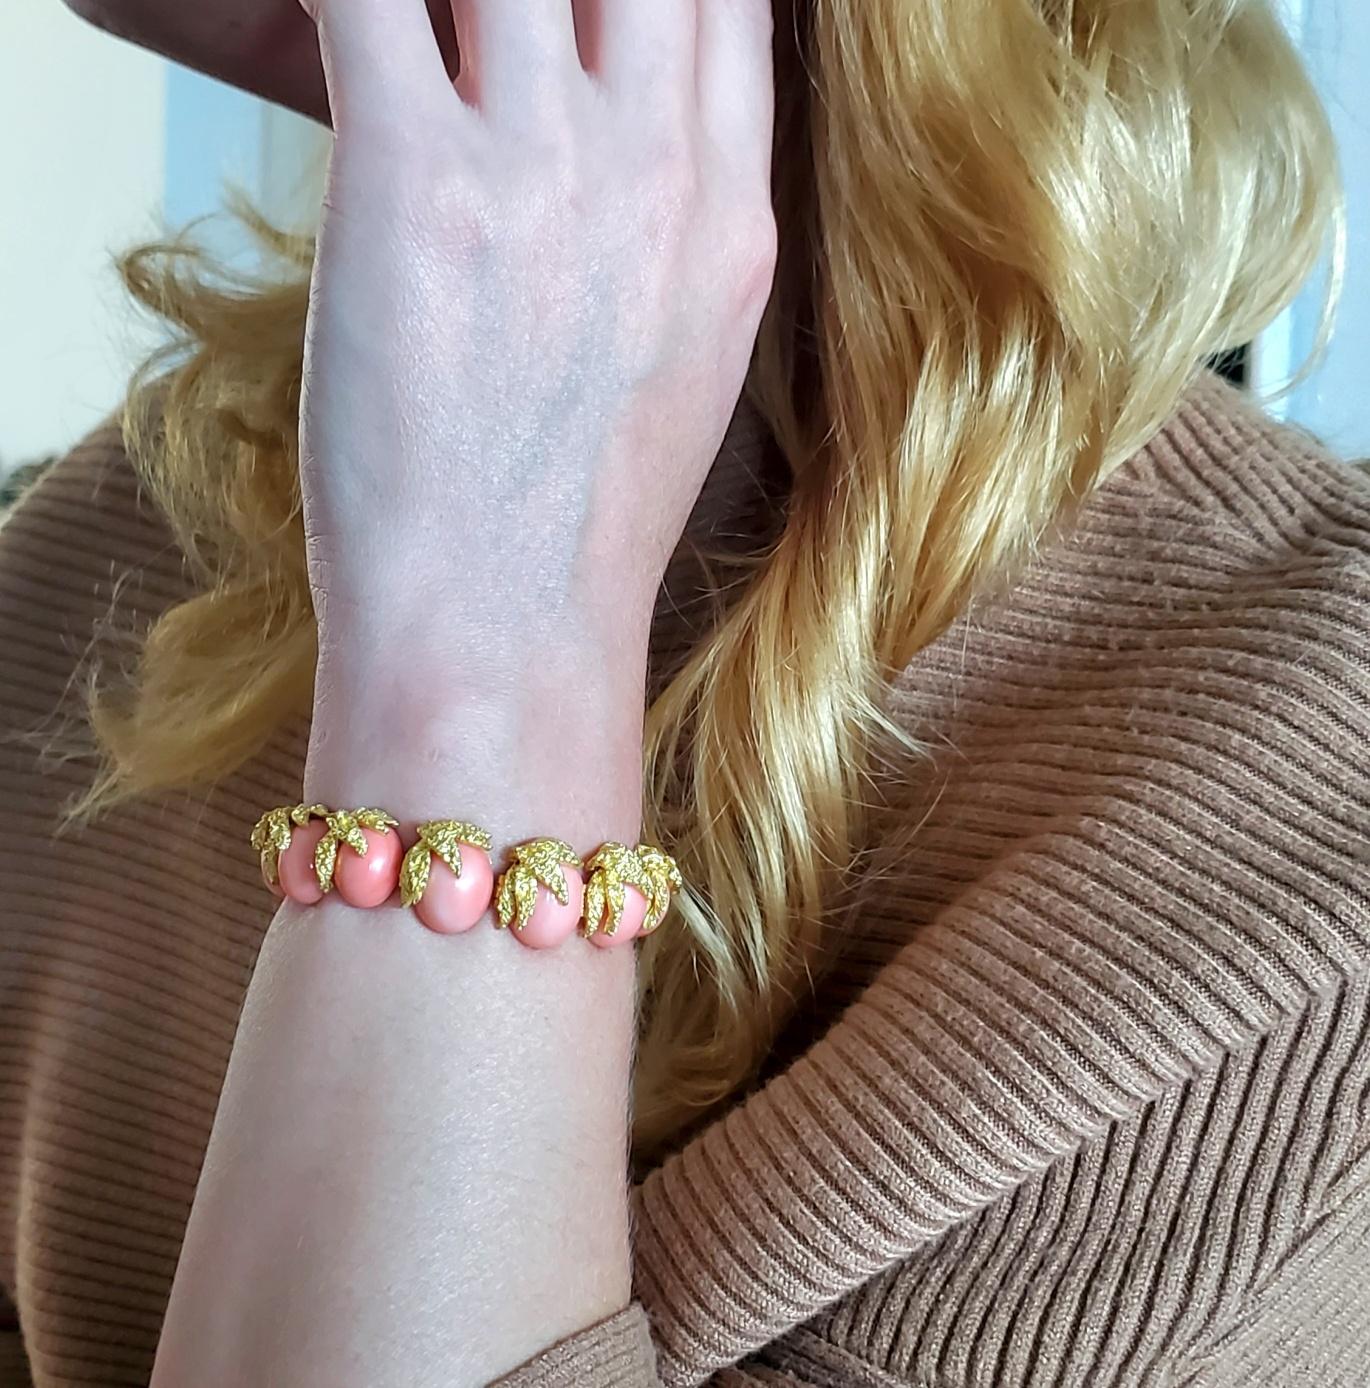 Bracelet avec des coraux conçu par Fred of Paris.

Fabuleux bracelet à maillons souples, créé à Paris, en France, par la maison de joaillerie Fred Joaillier, dans les années 1970. Cette pièce unique a été réalisée en or jaune massif texturé de 18